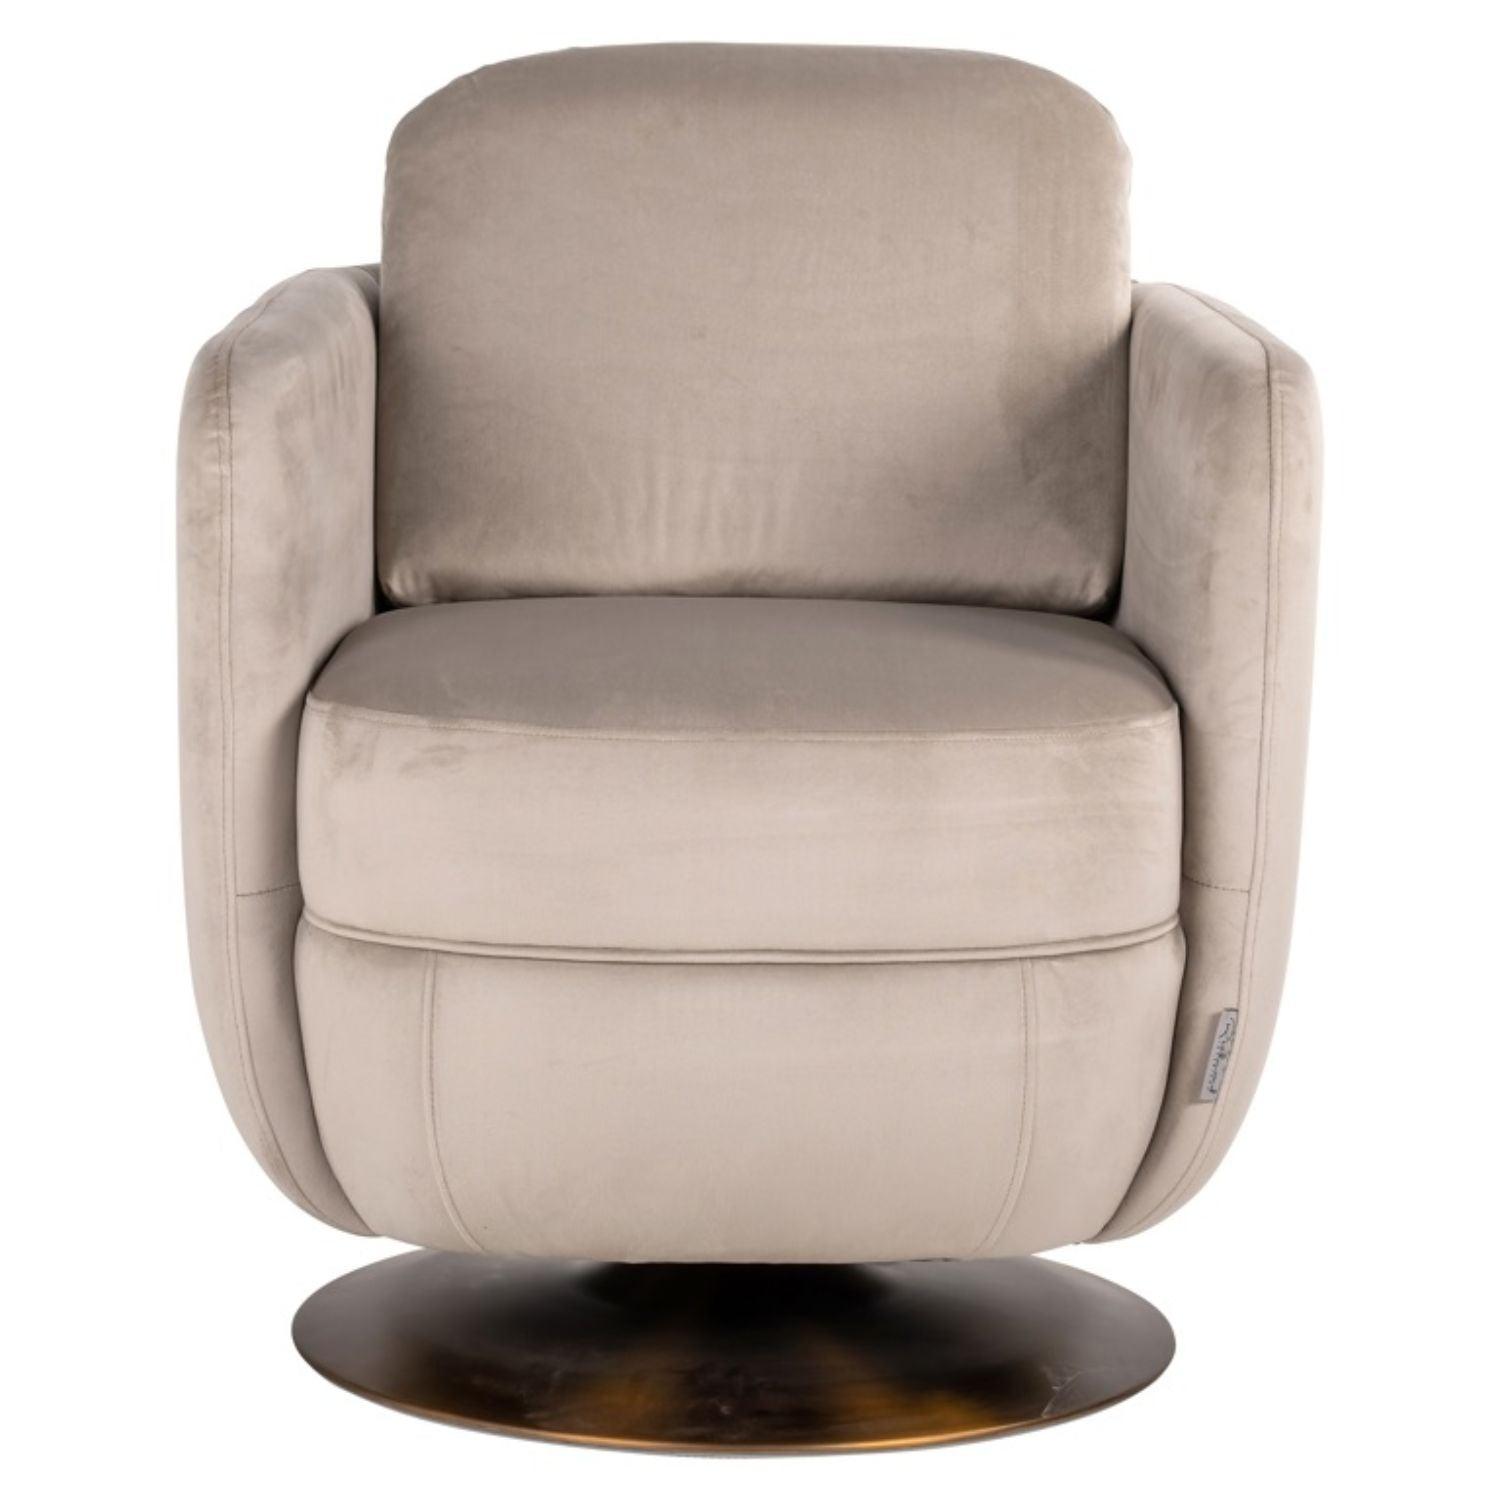 Richmond Interiors Turner Swivel Chair in Khaki Velvet S4576 FR - Fellini Home Ltd